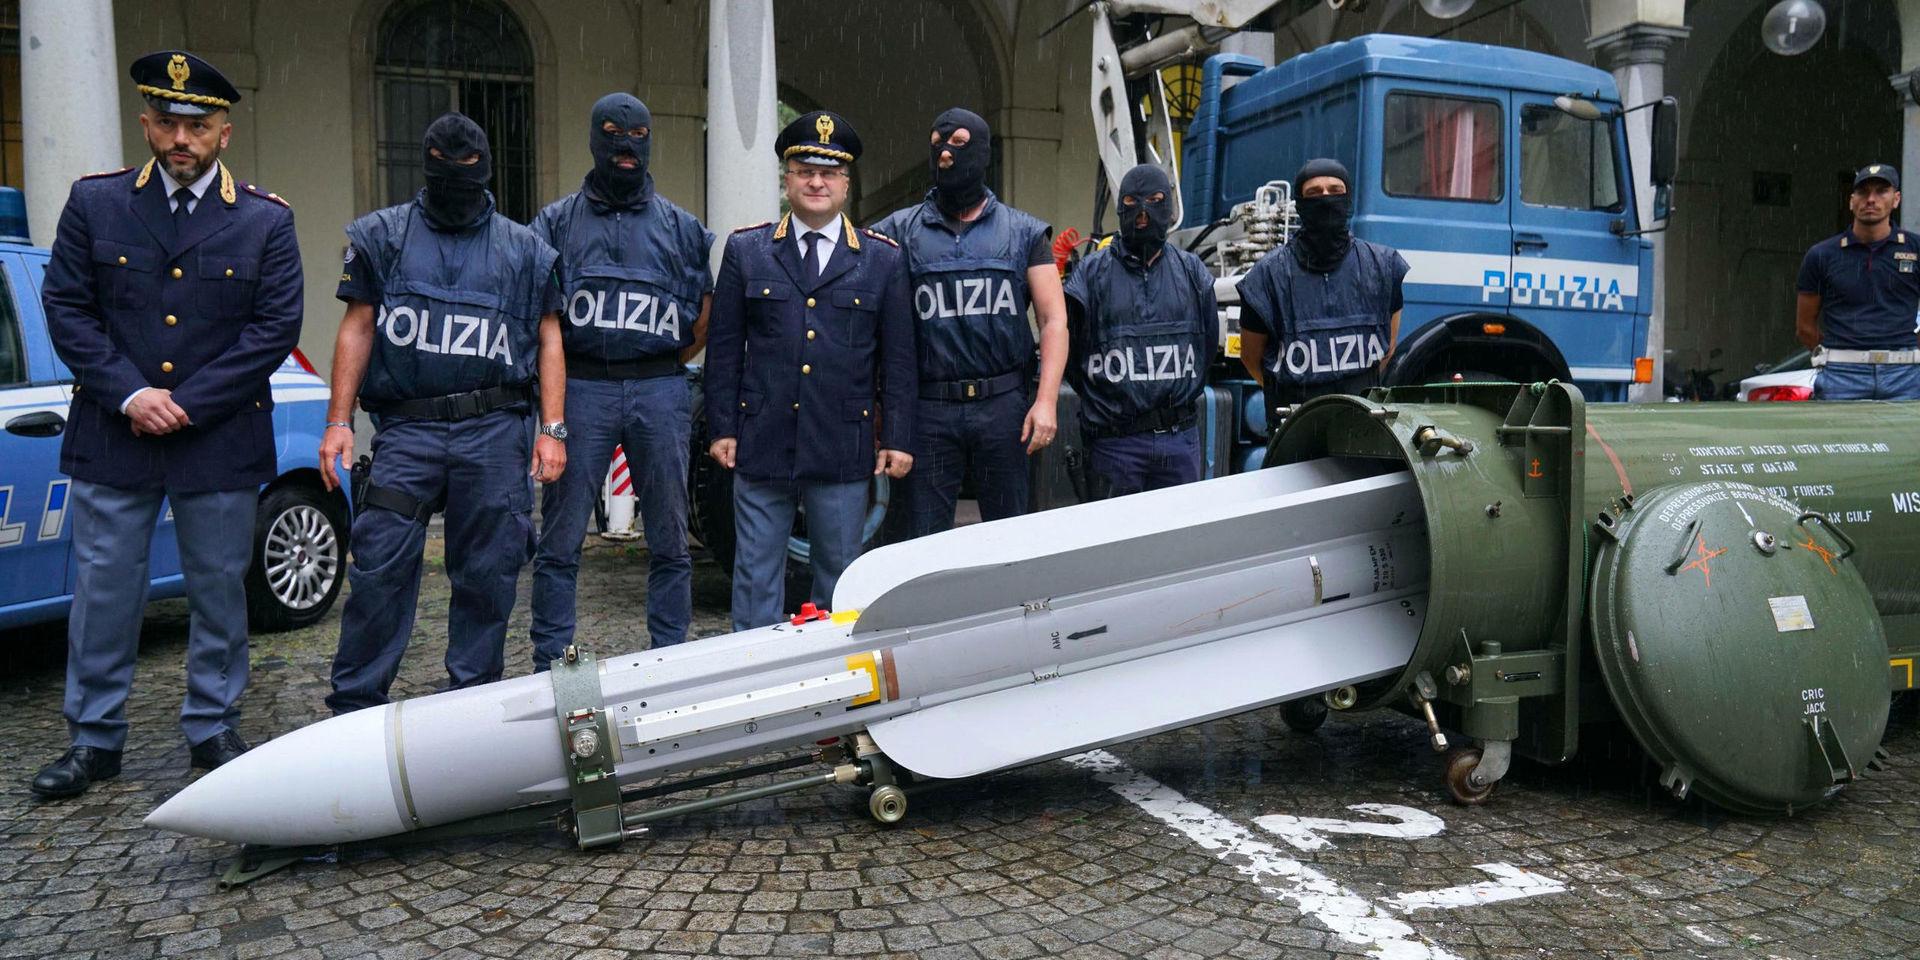 Italiensk polis uppställda vid den jaktrobot, som beslagstogs i samband med att man genomförde flera räder mot högerextrema grupper runt om i landet. 